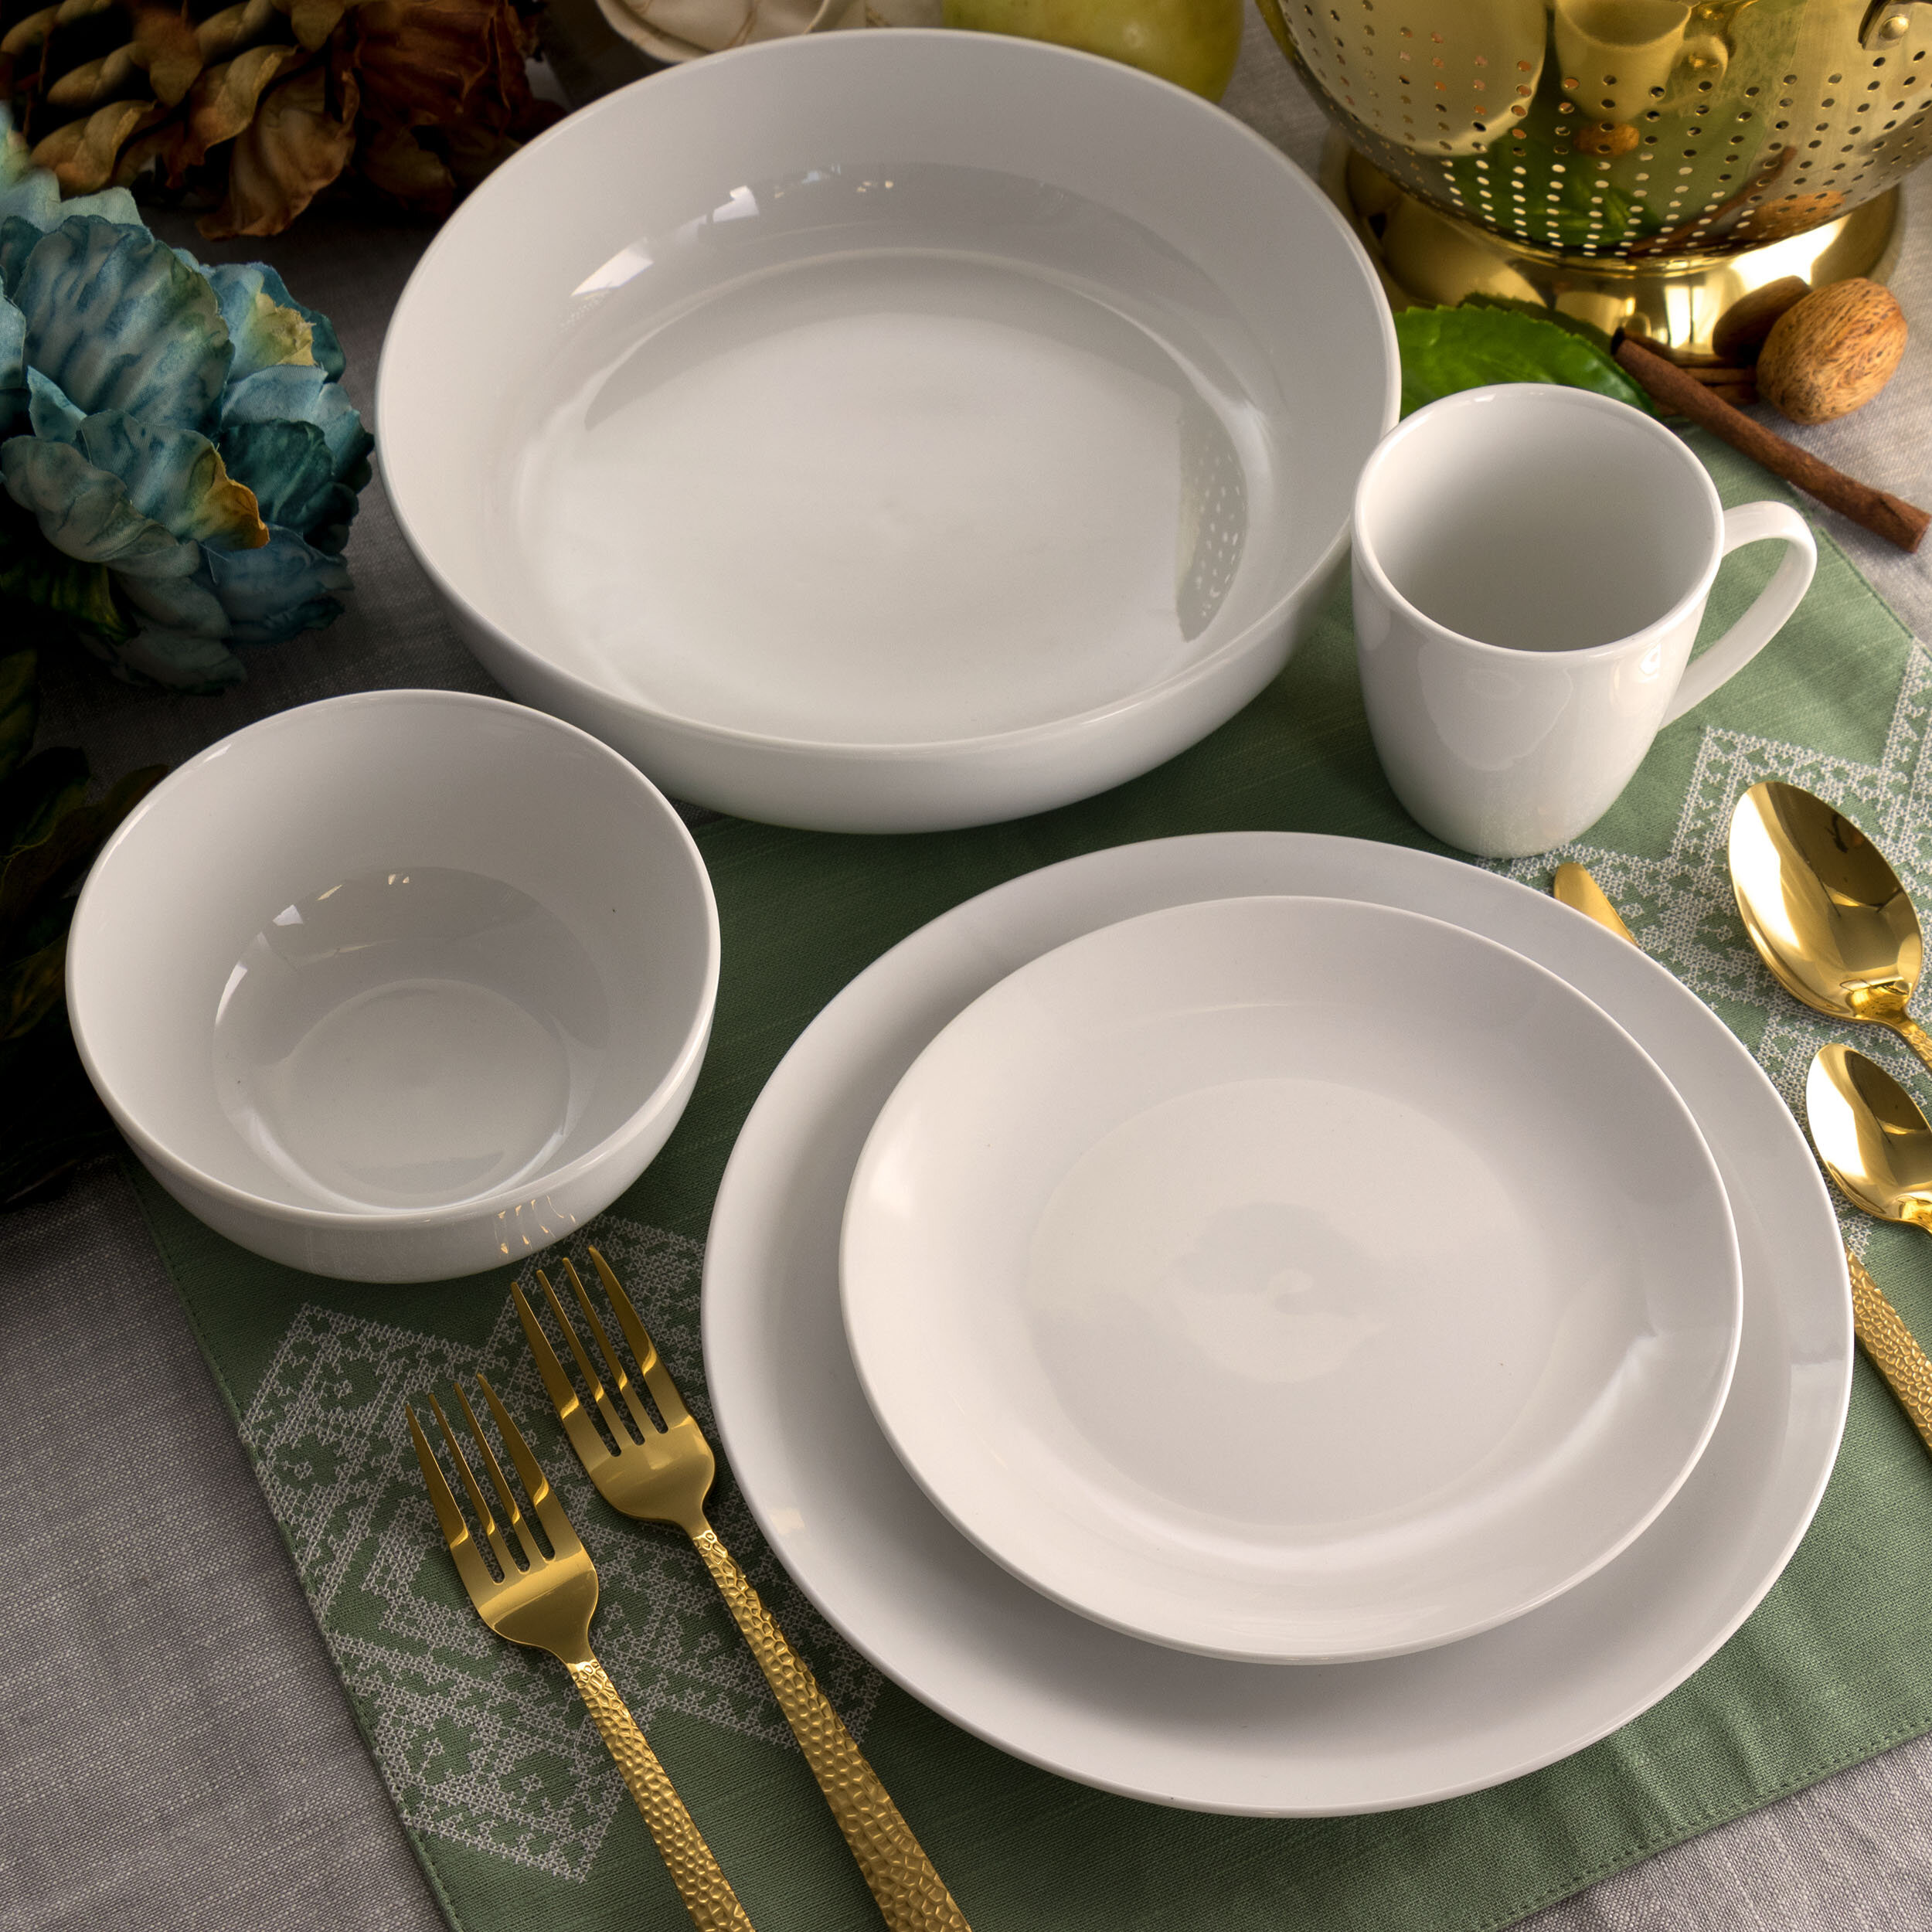 Elama 16-Piece Cara White Porcelain Dinnerware Set (Service for 4